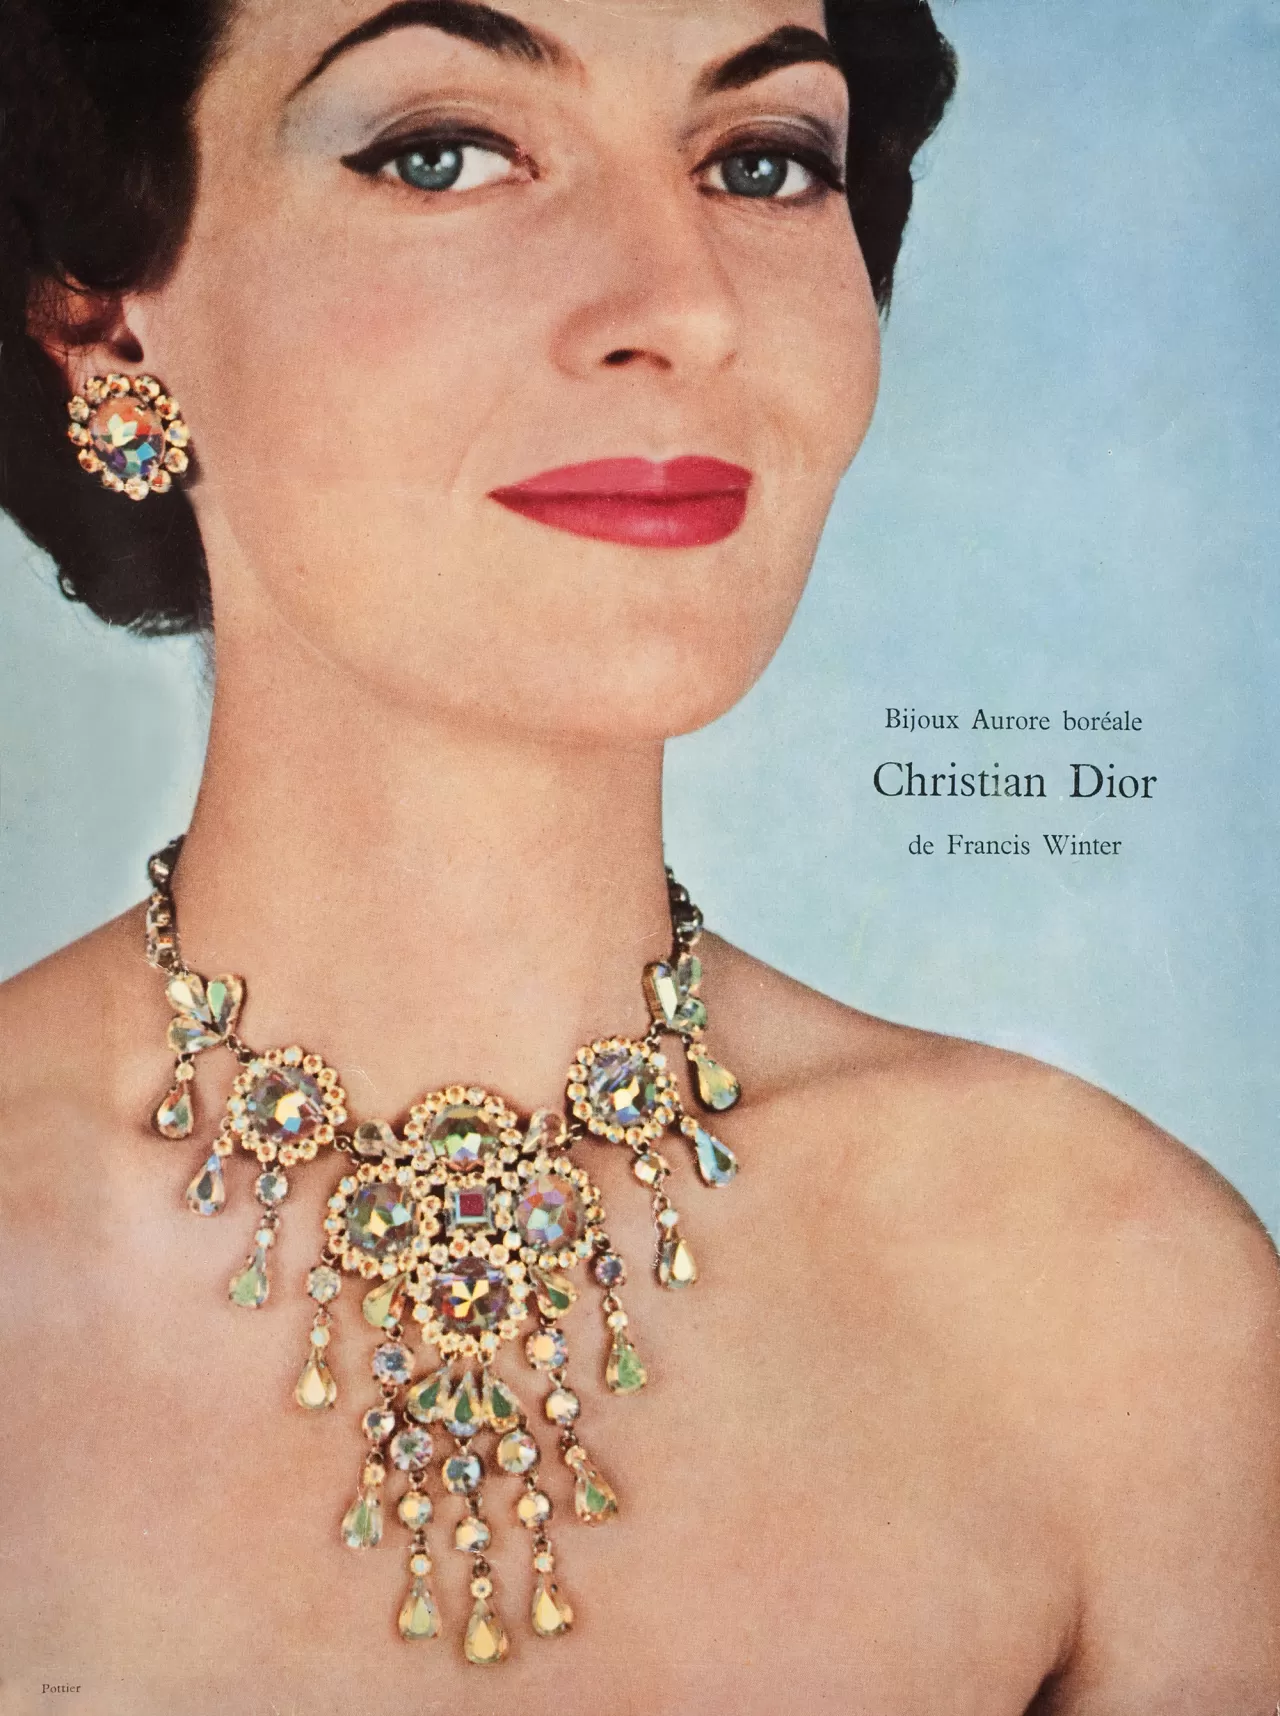 Publicité pour Dior avec mannequin portant une parure collier et boucles d'oreilles sertie de cristaux multicolores